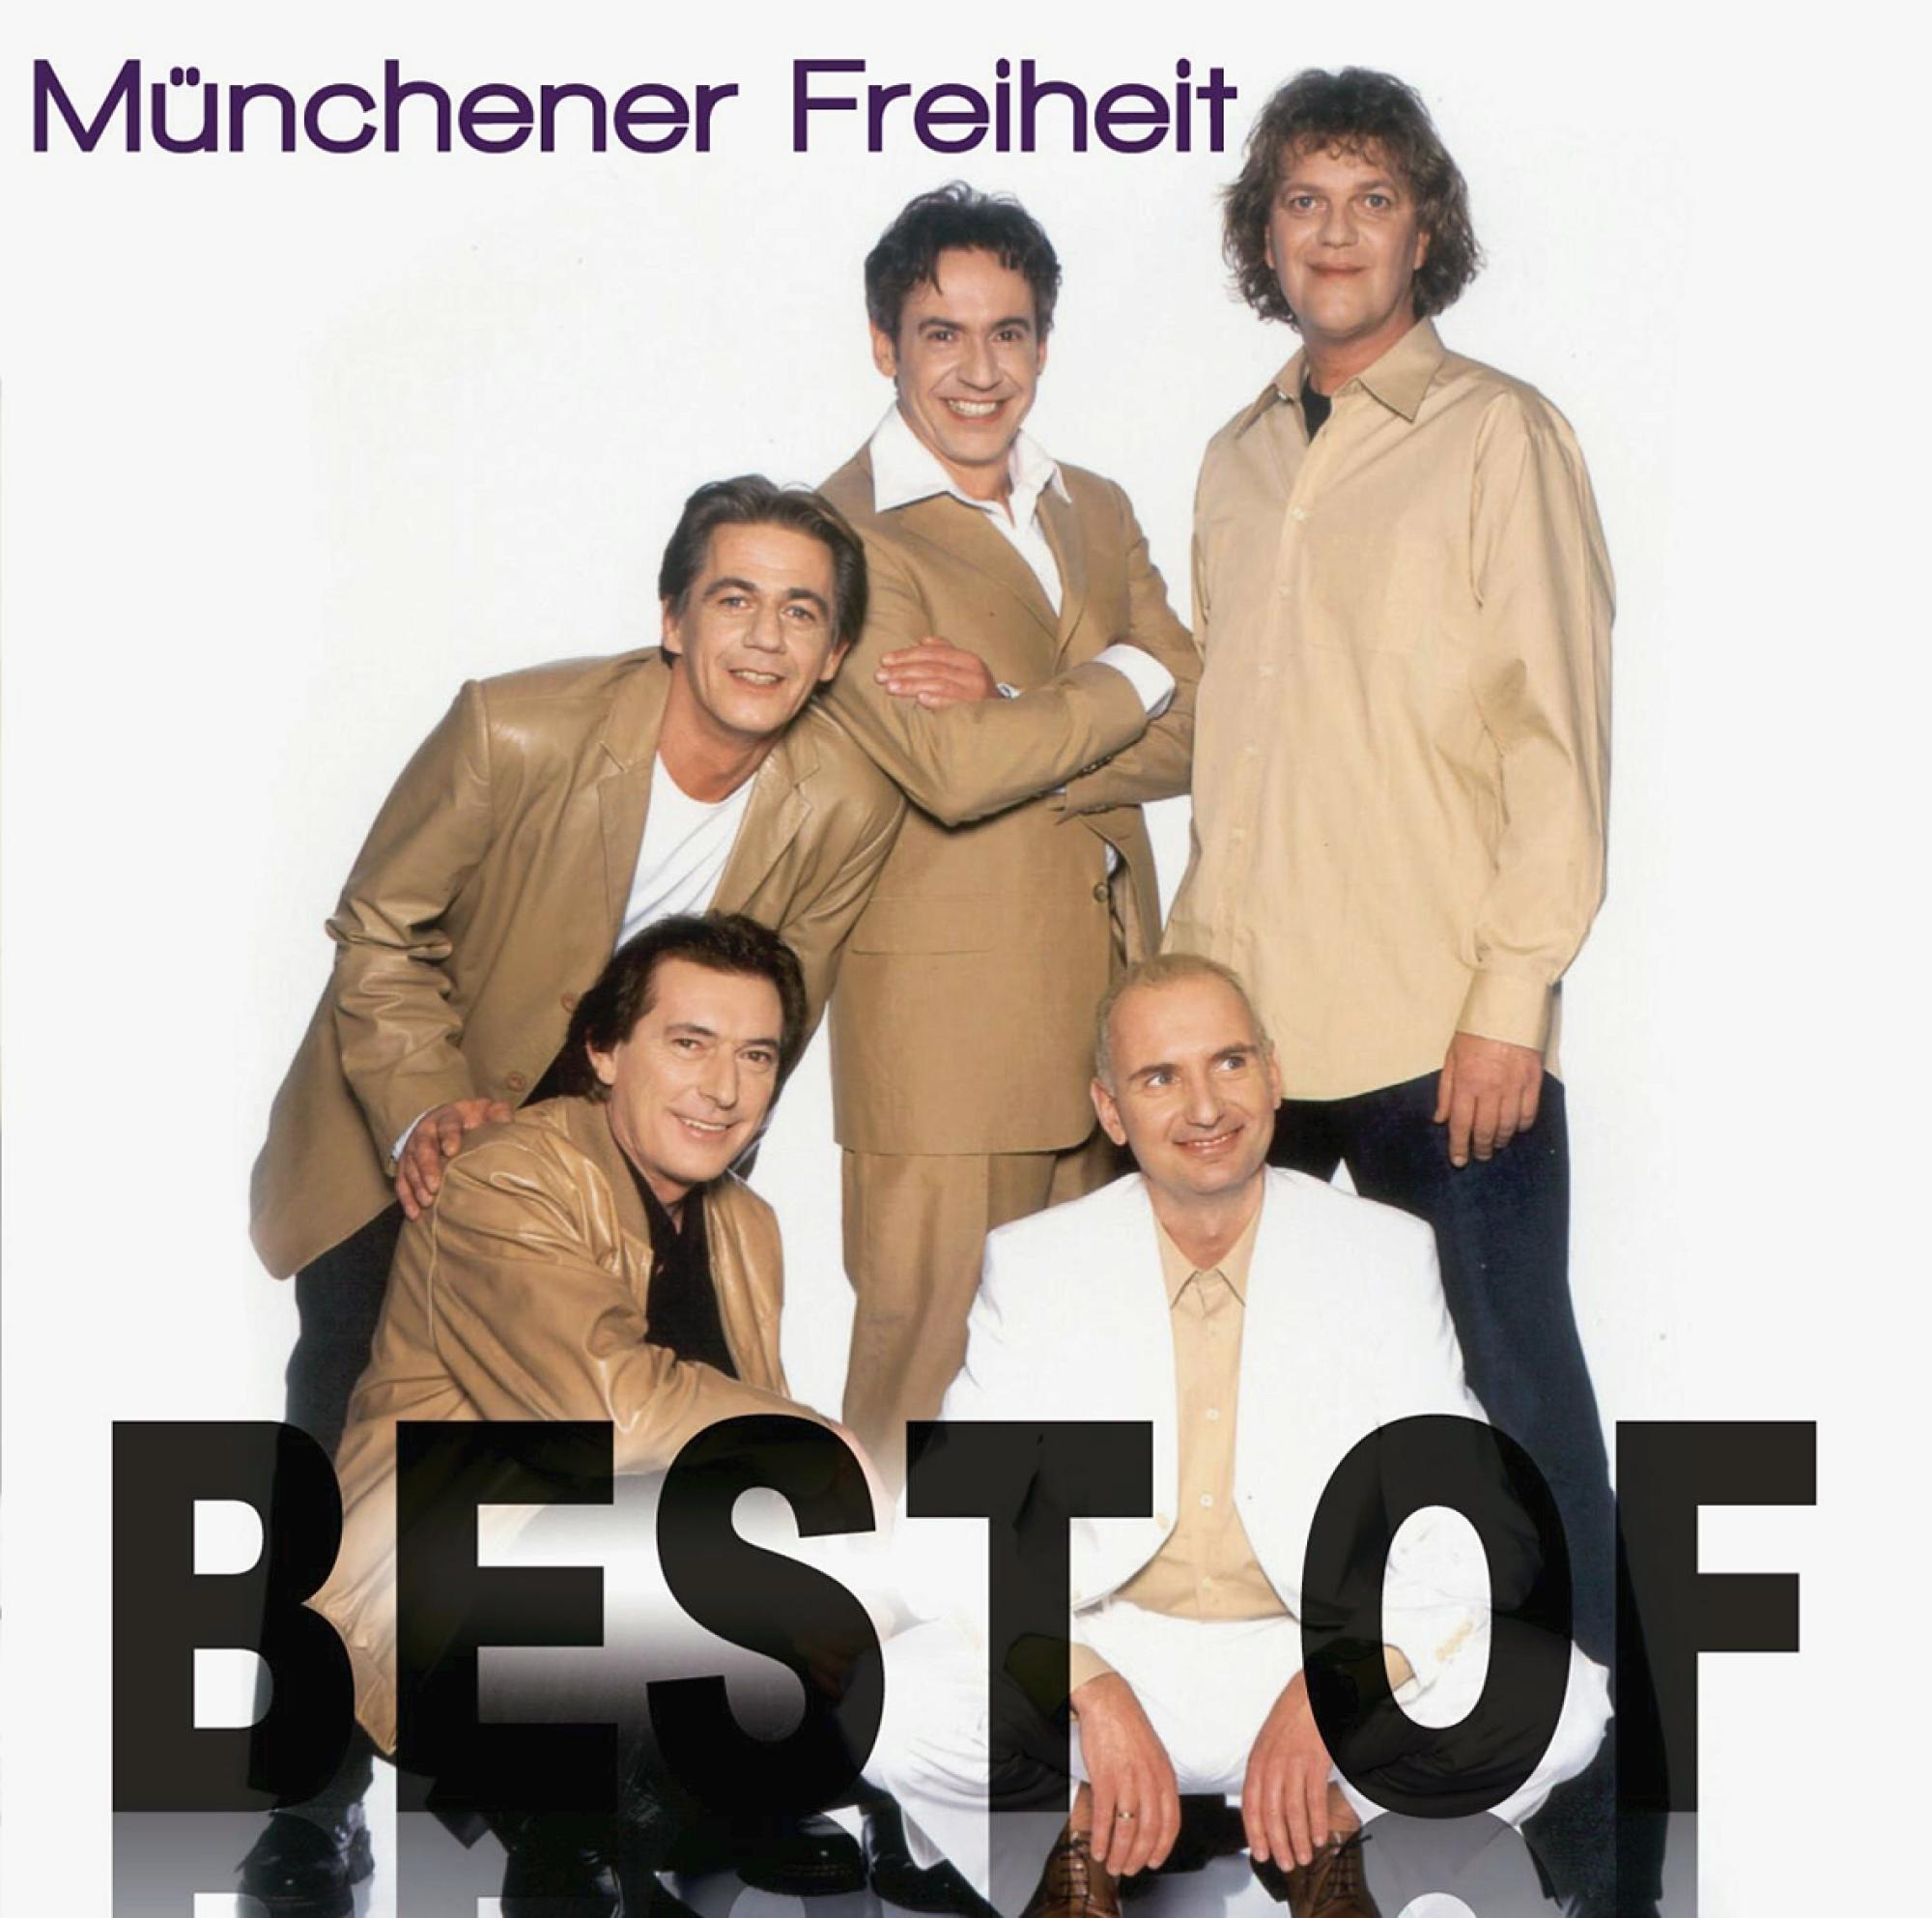 Münchener - - (CD) Of Best Freiheit